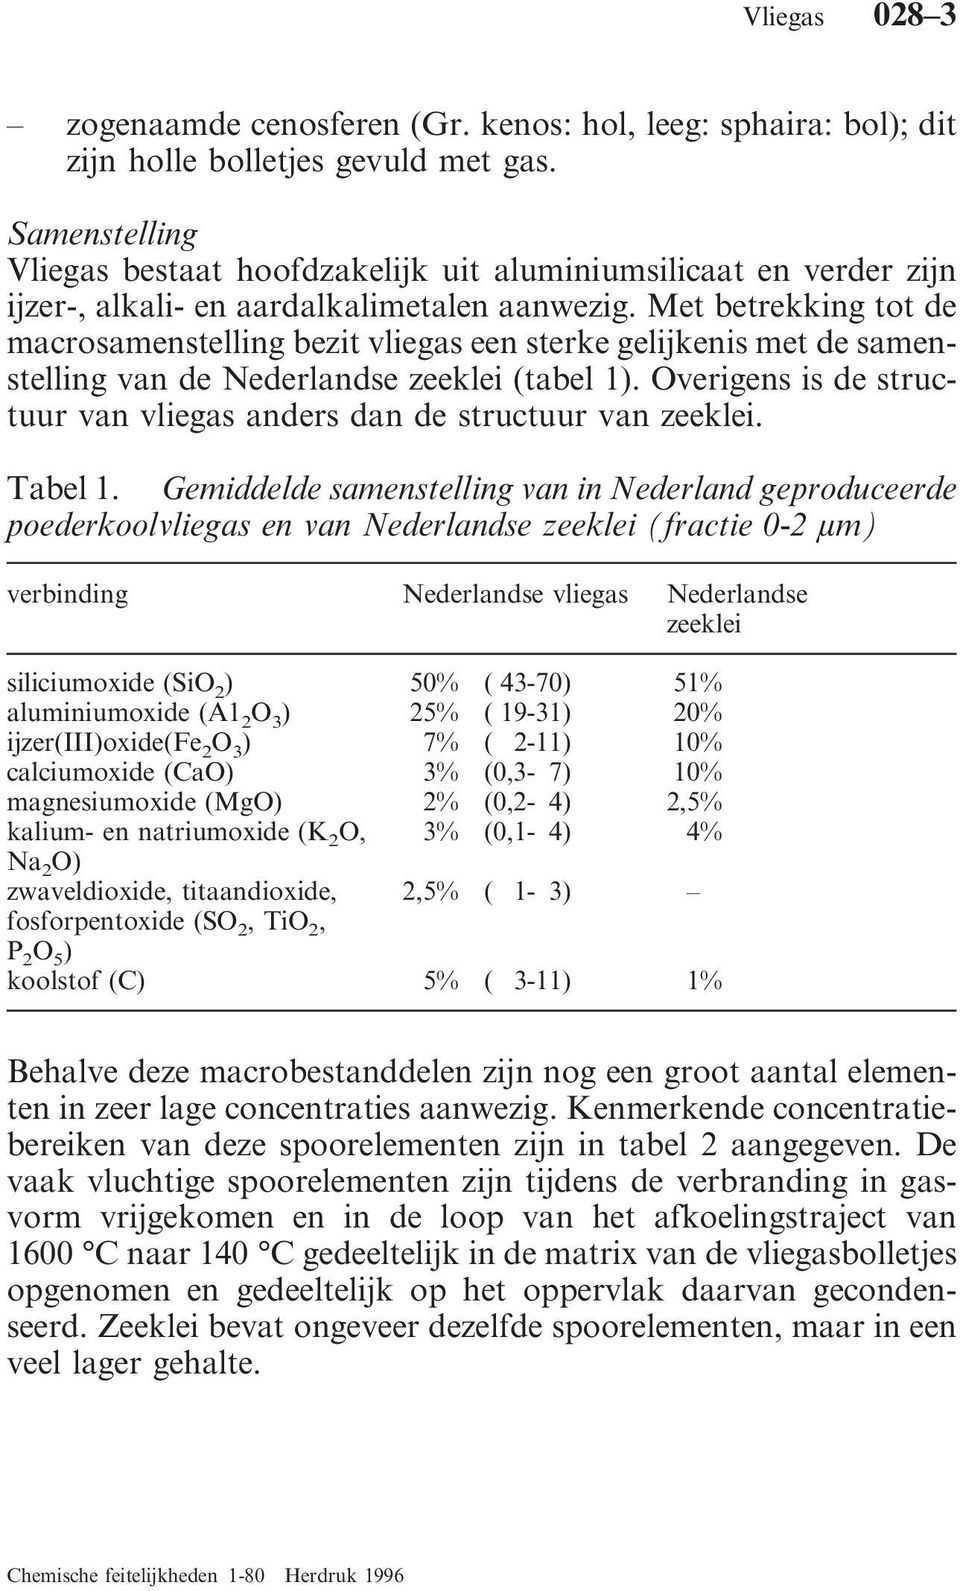 Met betrekking tot de macrosamenstelling bezit vliegas een sterke gelijkenis met de samenstelling van de Nederlandse zeeklei (tabel 1).